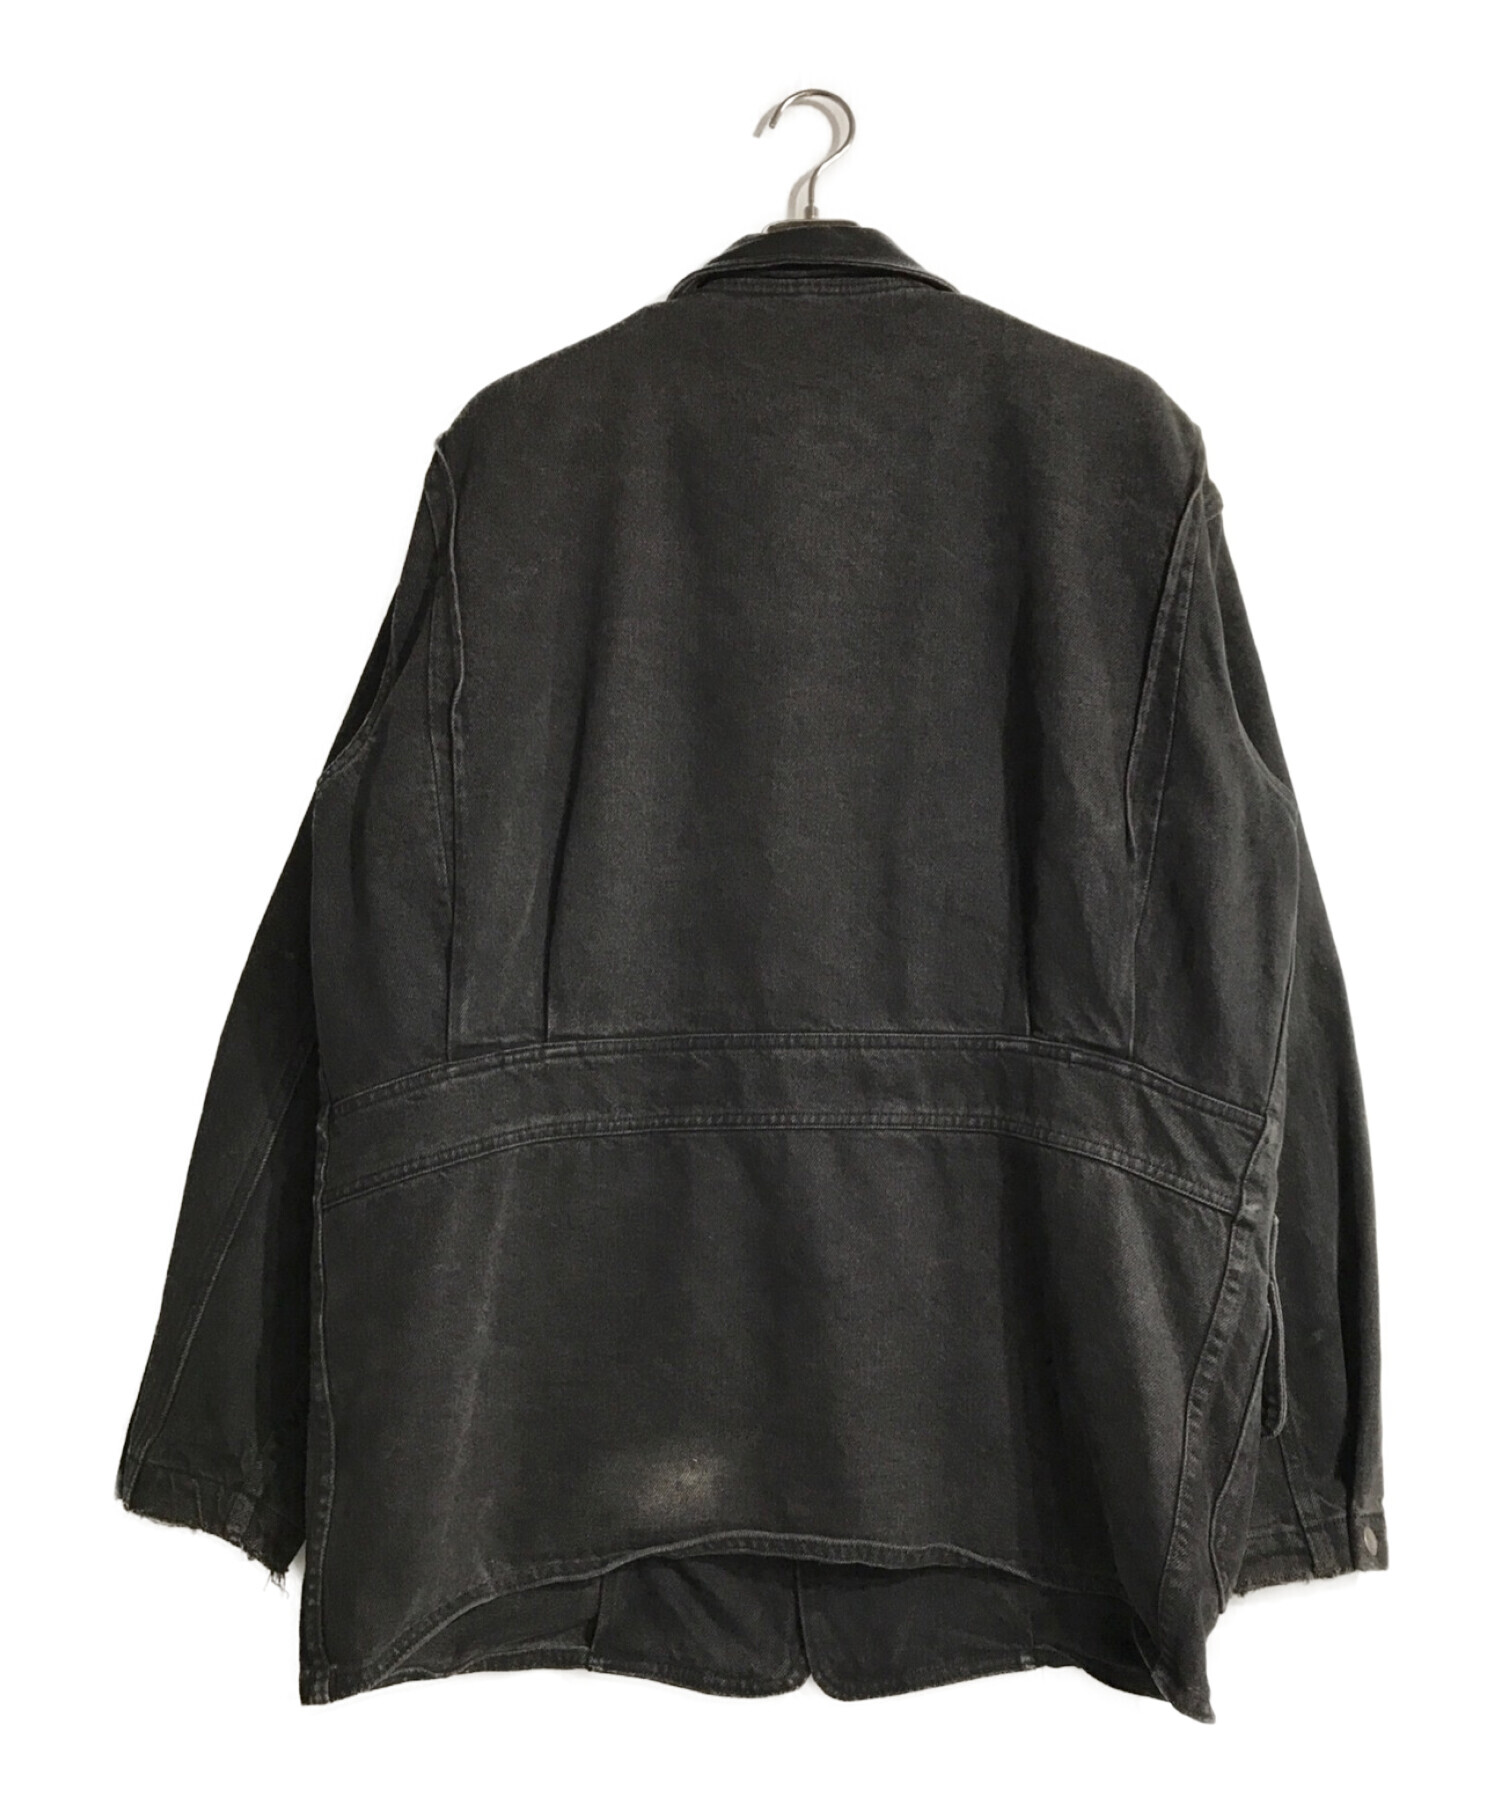 WOOLRICH (ウールリッチ) ウールライナー付き襟レザーカバーオール ブラック サイズ:M